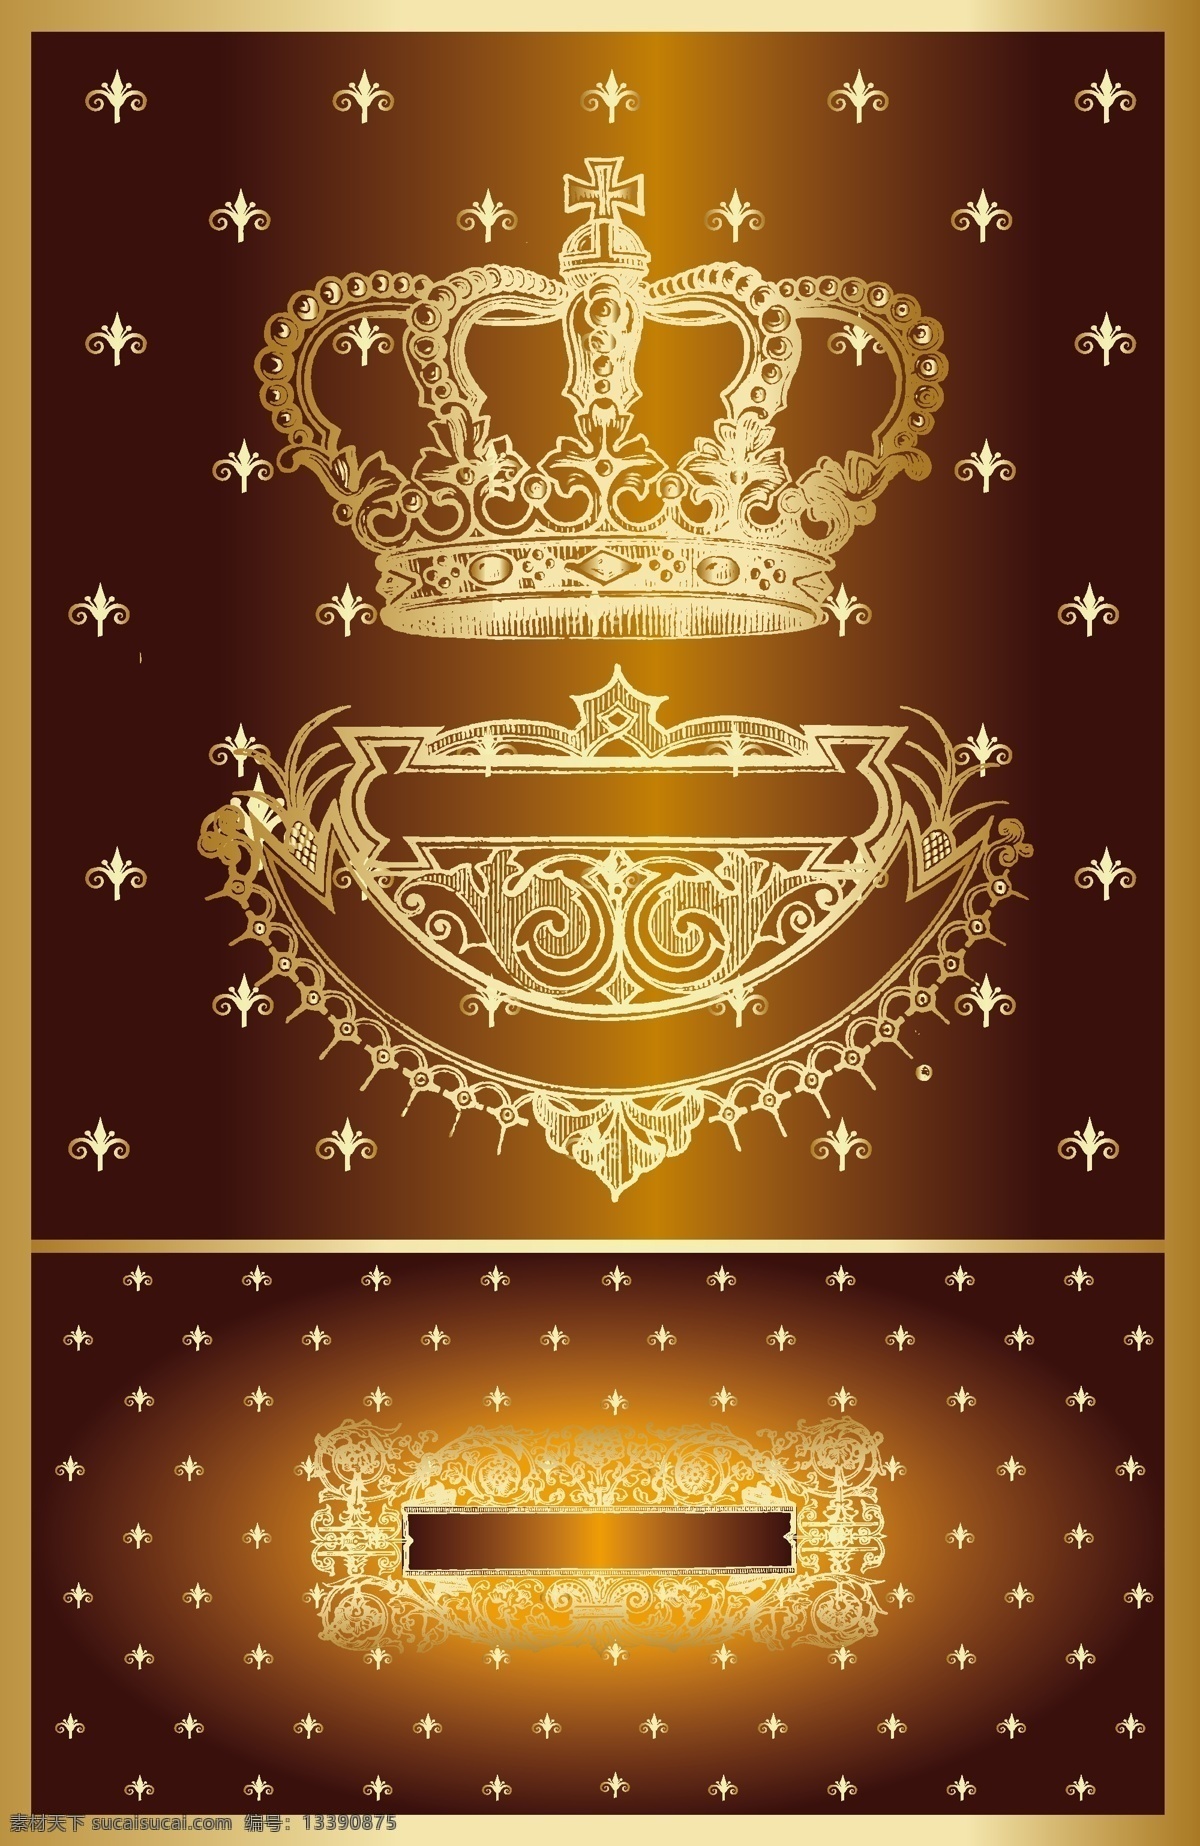 欧式 皇冠 皇冠logo 皇冠标志 皇冠矢量图 皇冠素材 其他矢量图